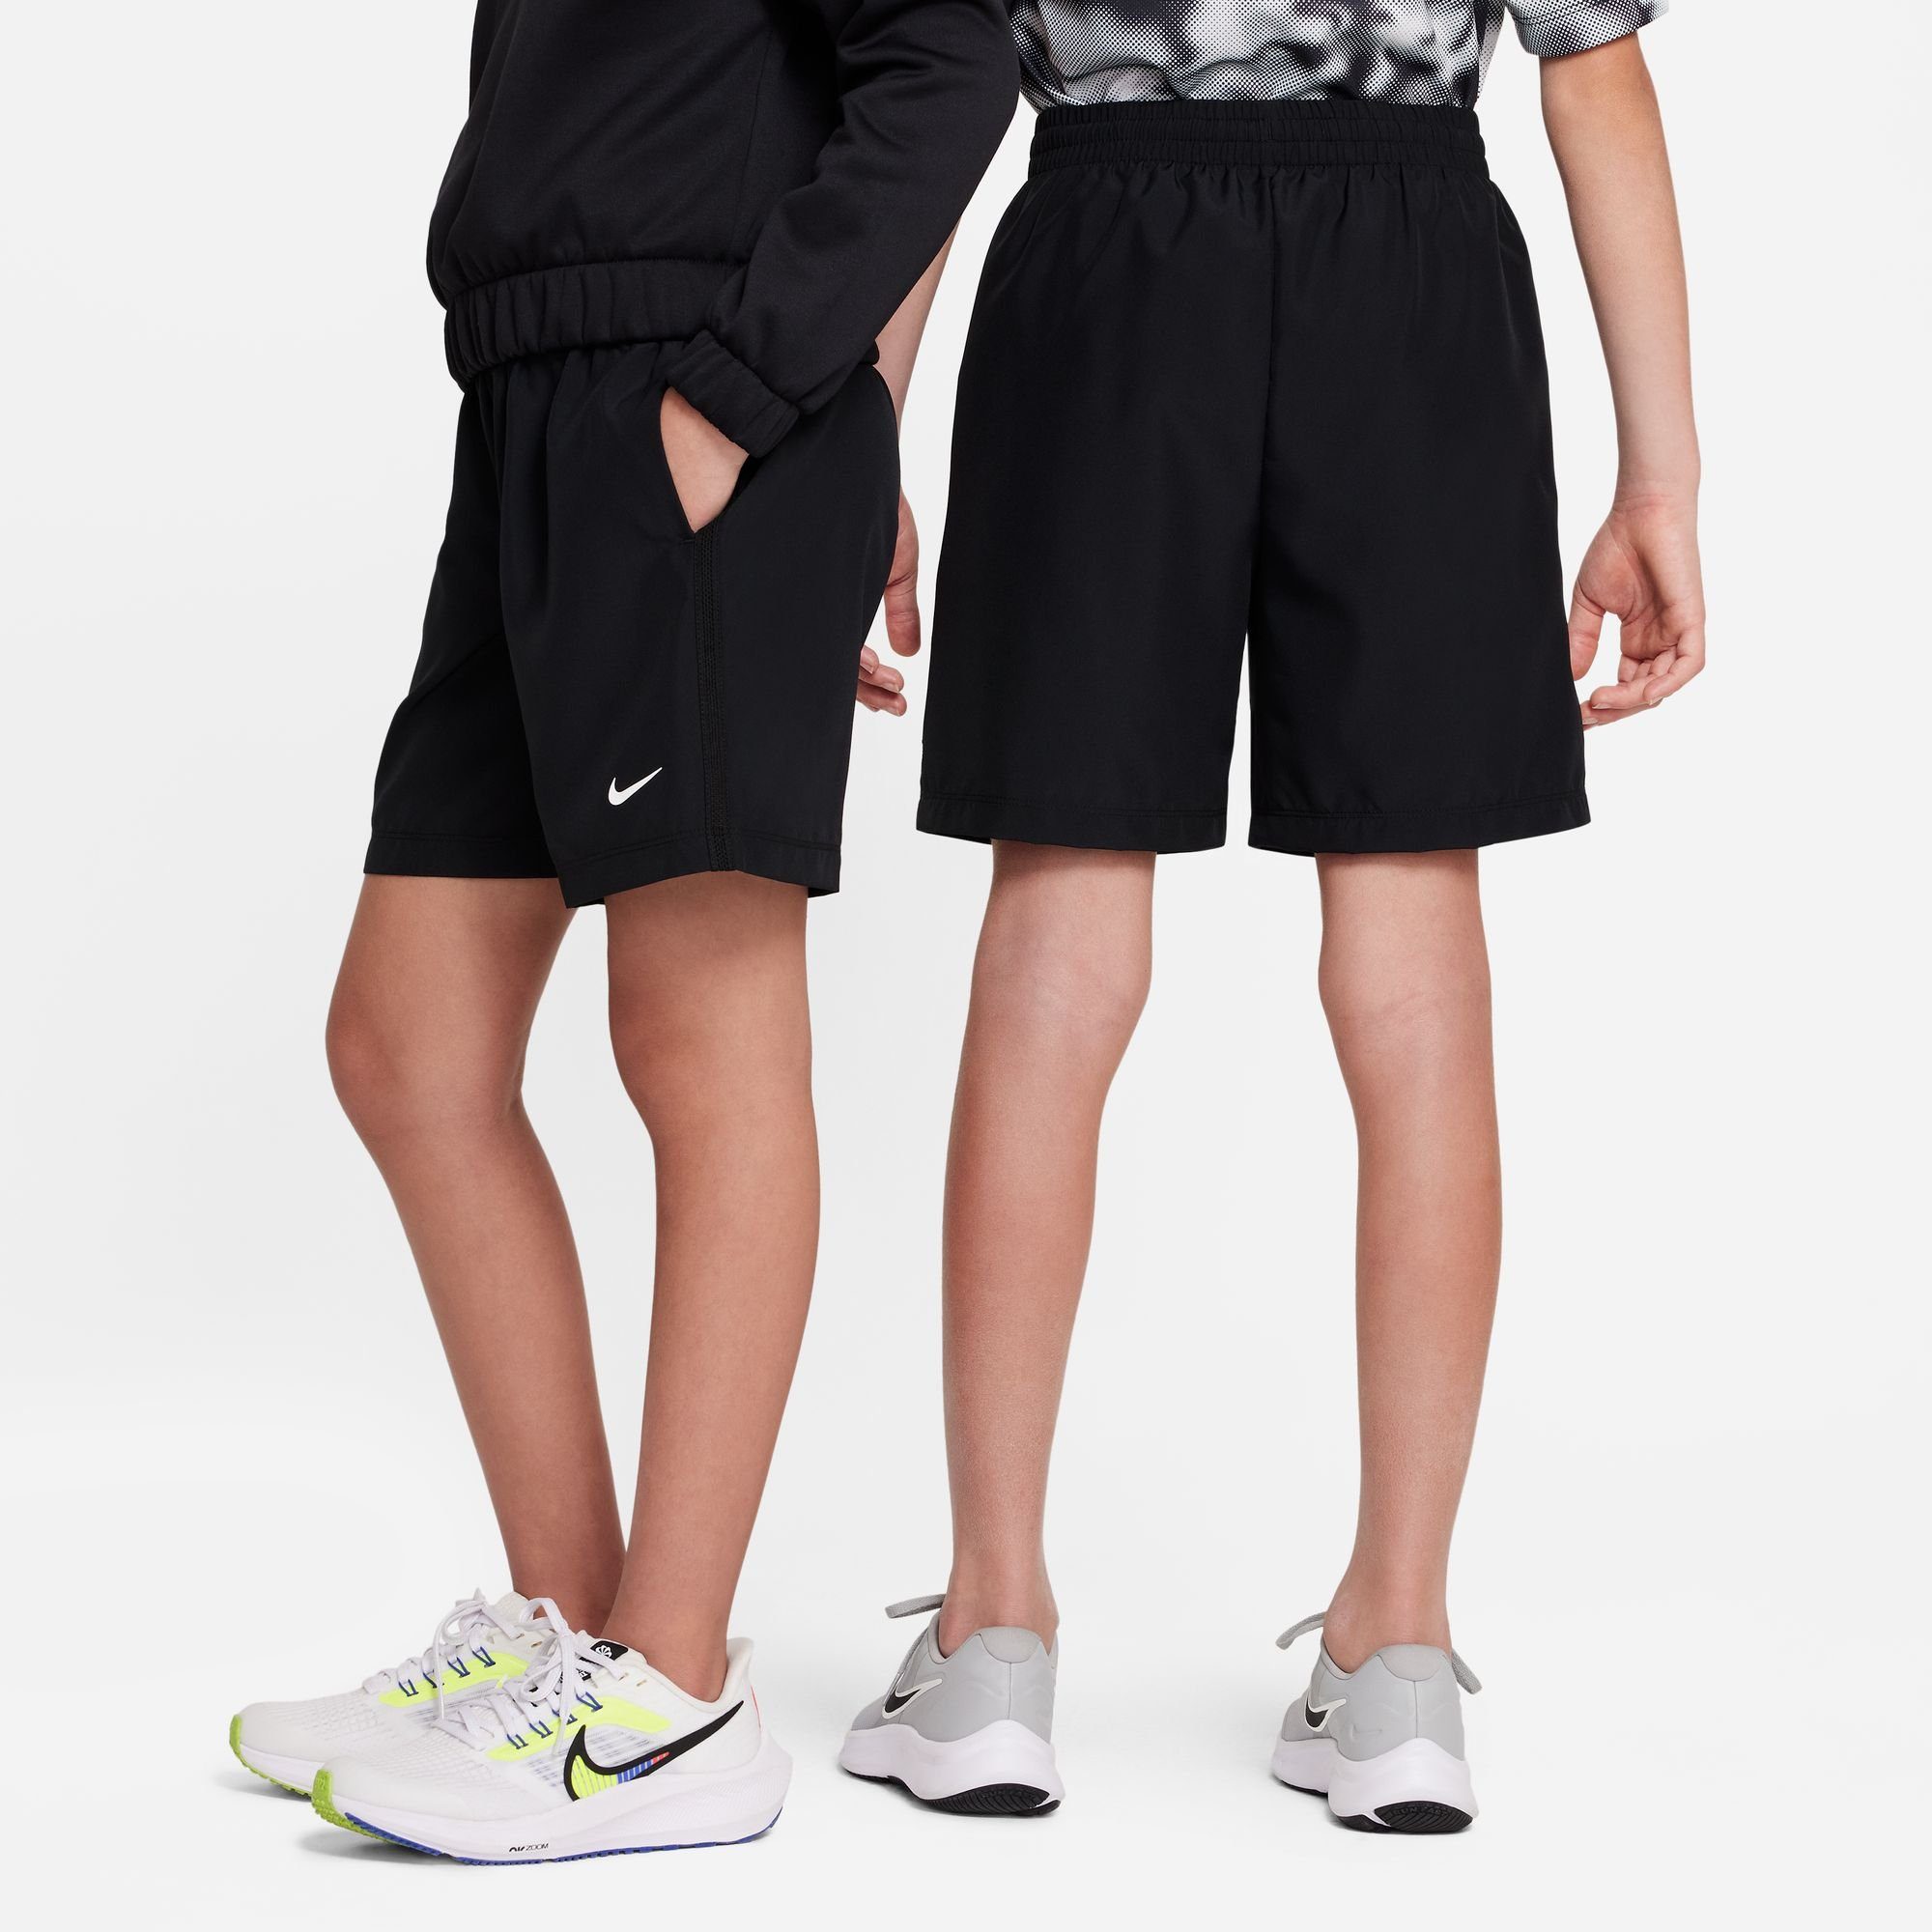 MULTI+ KIDS' TRAINING BIG Nike (BOYS) BLACK/WHITE SHORTS DRI-FIT Trainingsshorts